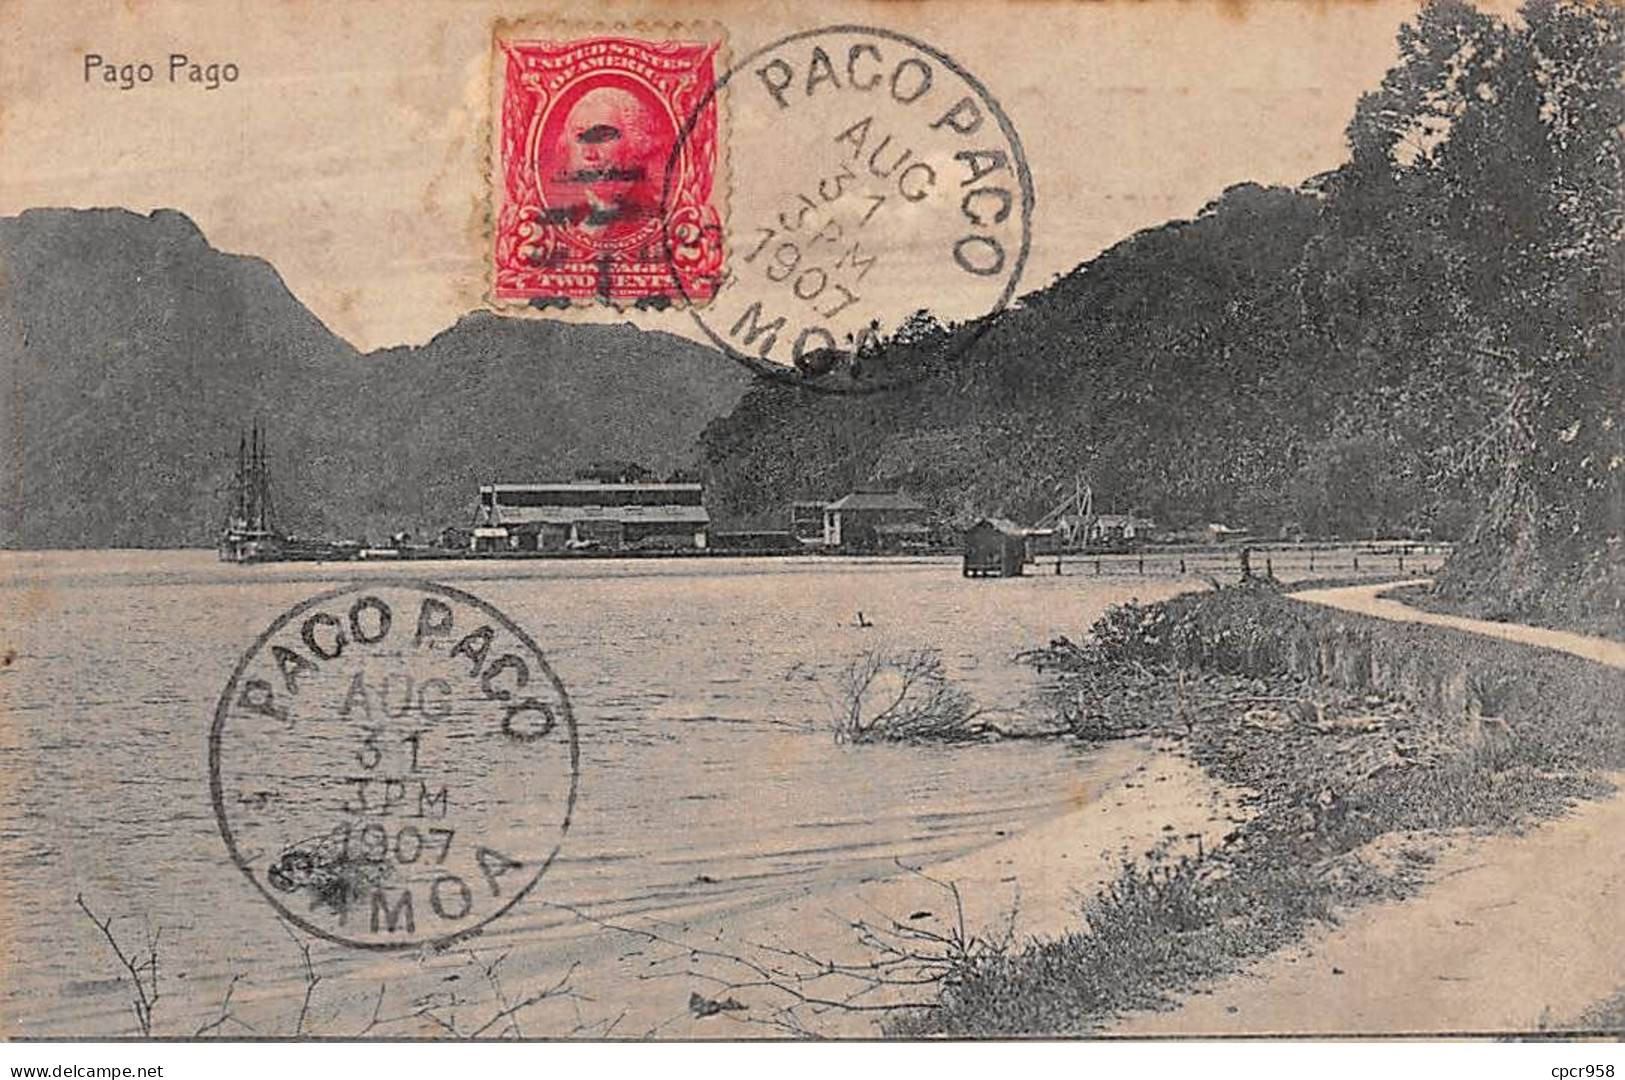 Samoa Américaine - N°78740 - Pago Pago - AFFRANCHISSEMENT DE COMPLAISANCE - Samoa Américaine